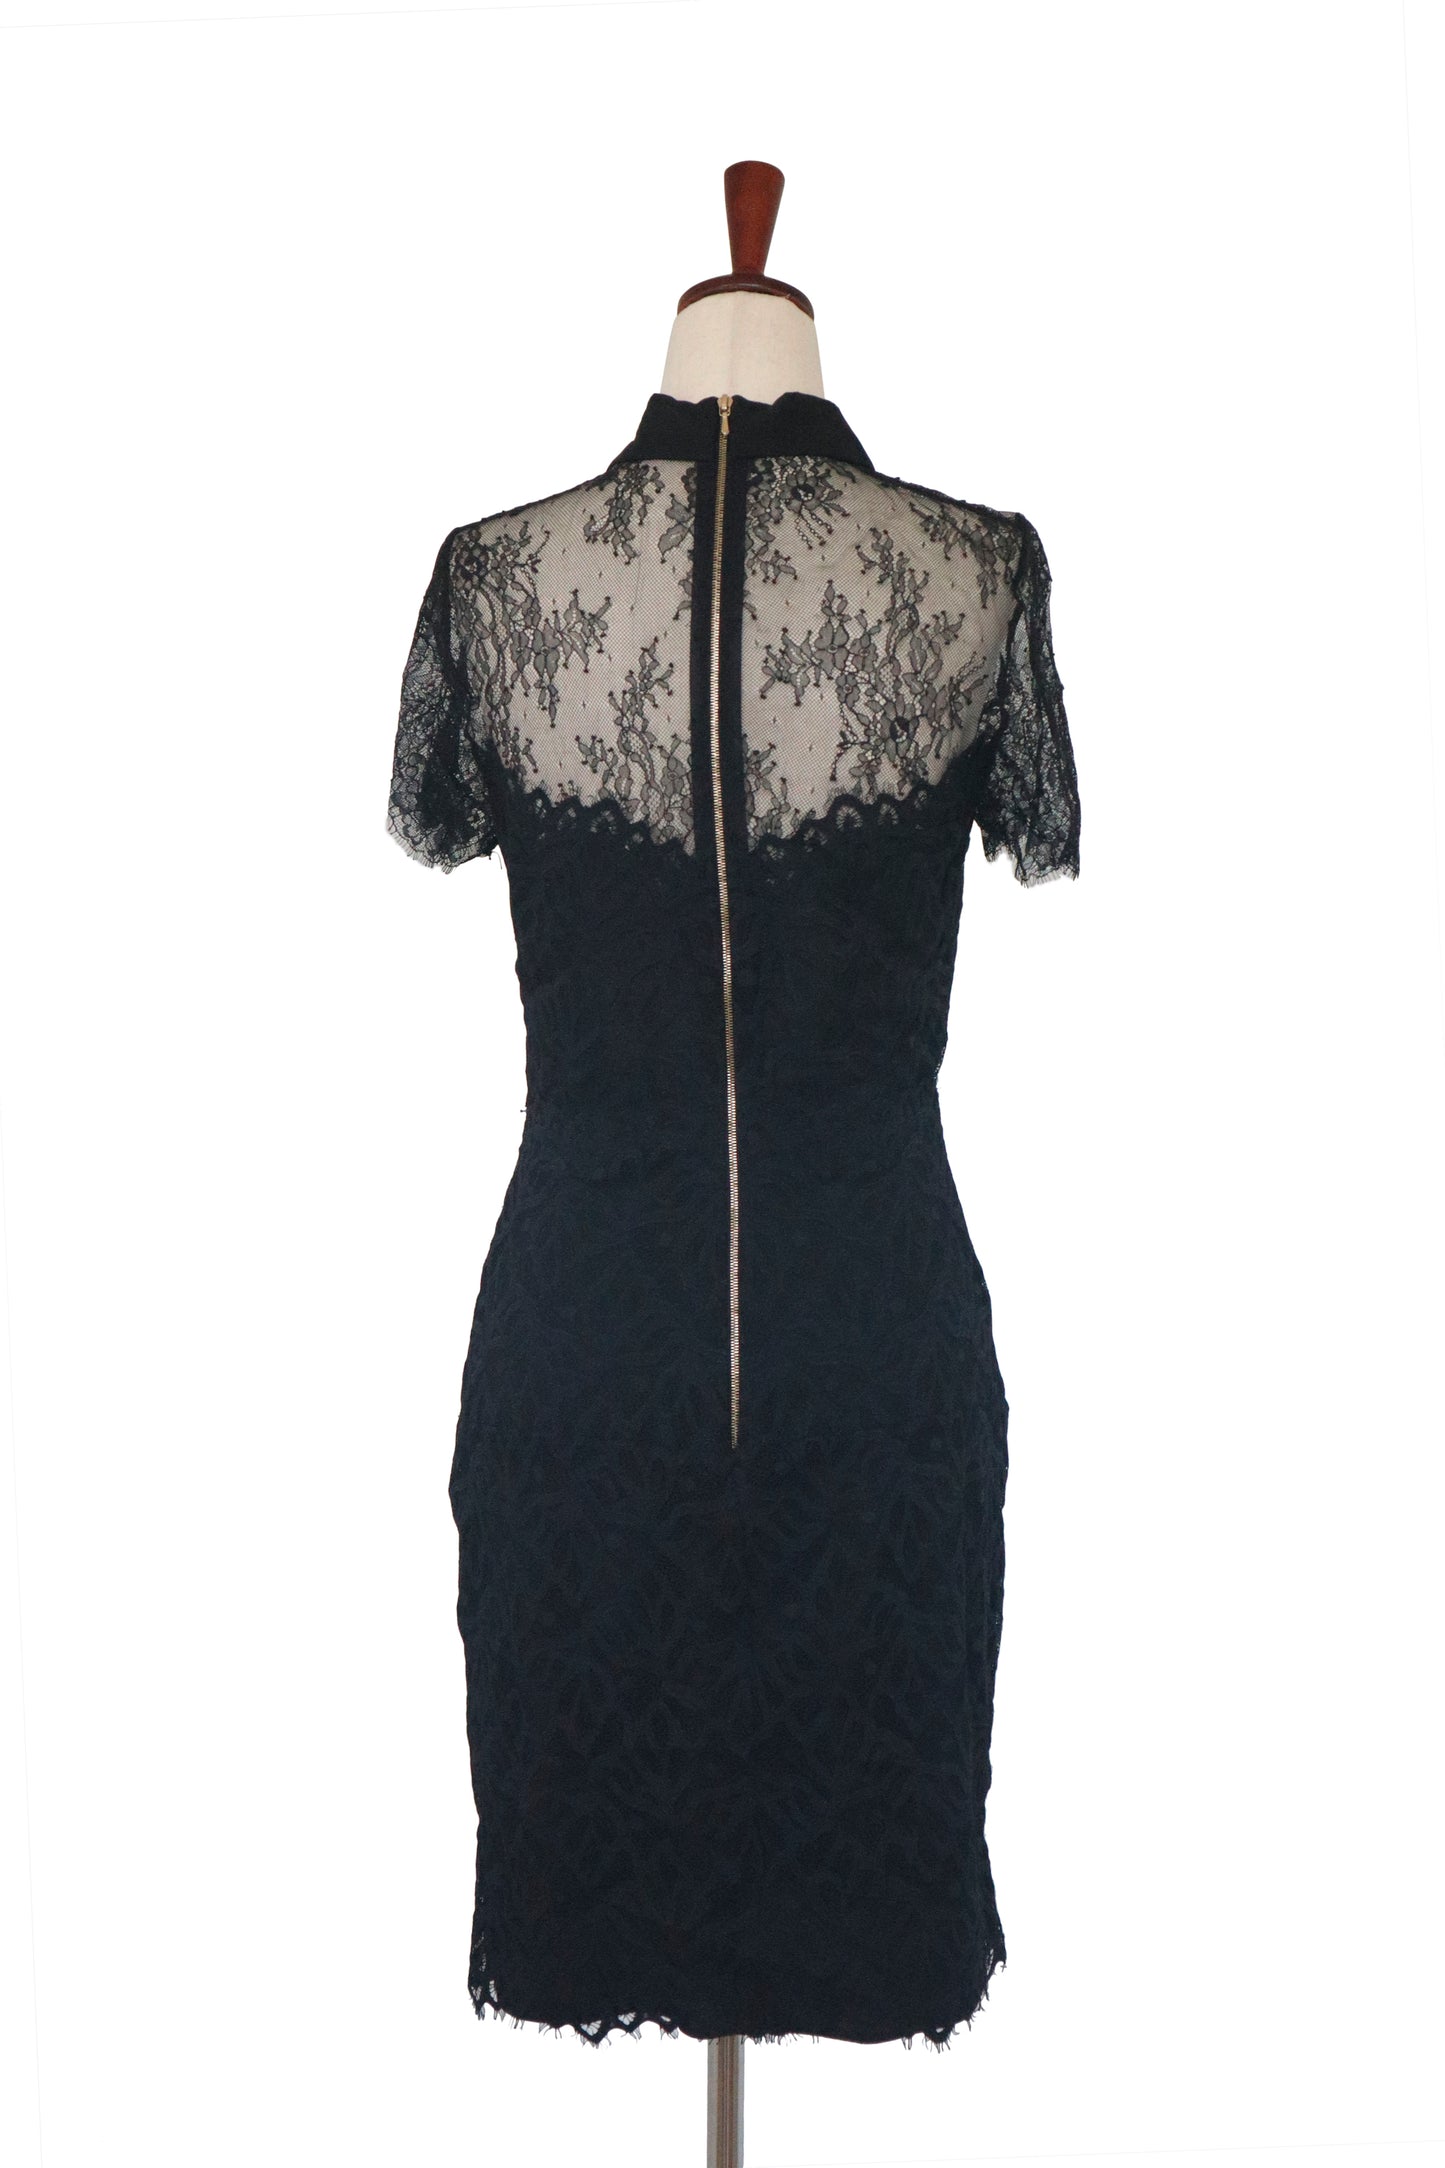 SANDRO - Black Lace Dress - US 2